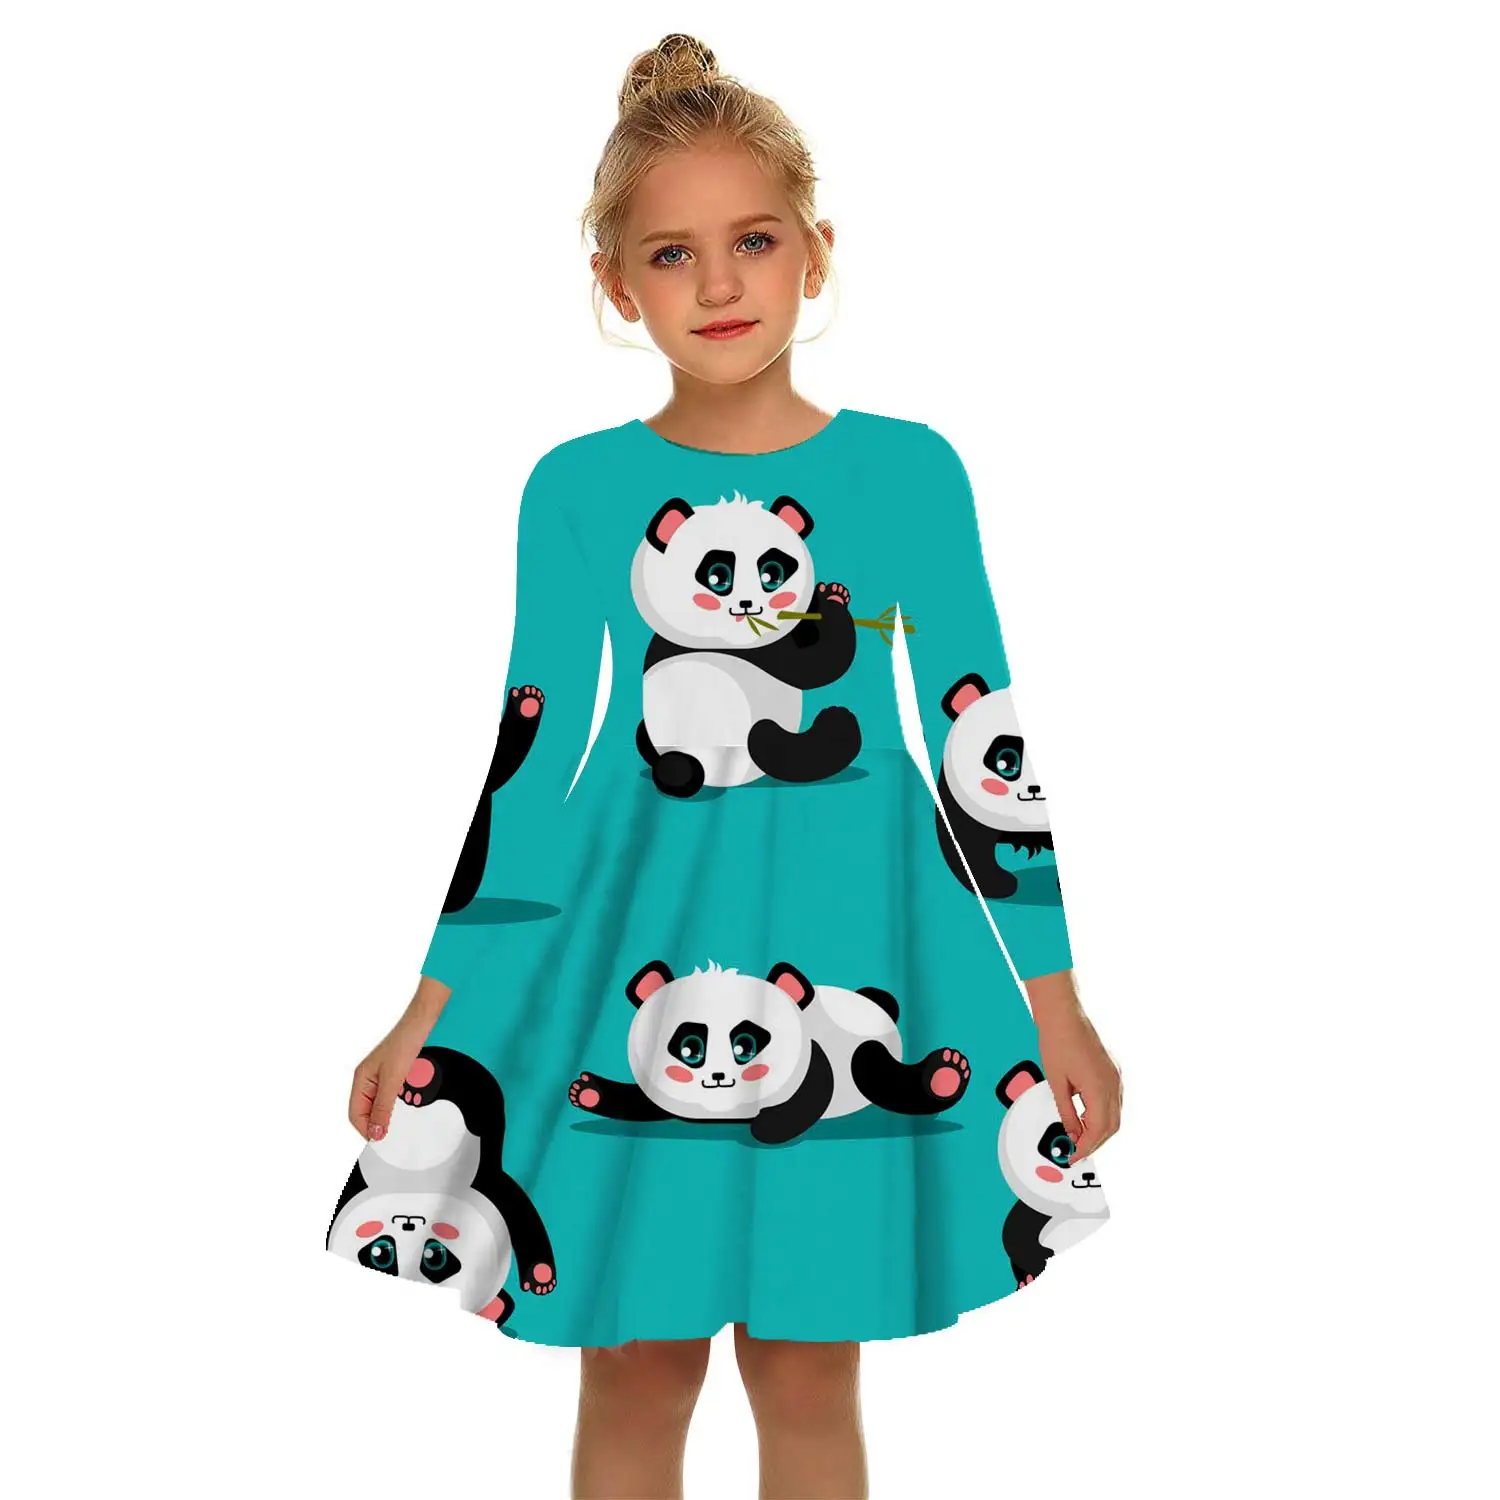 

Summer Panda 3D Print Girls Gorgeous Dress White Girl Princess Dress Irregular Tutu 2-17 Y Pink Children Leisure Dresses Panda